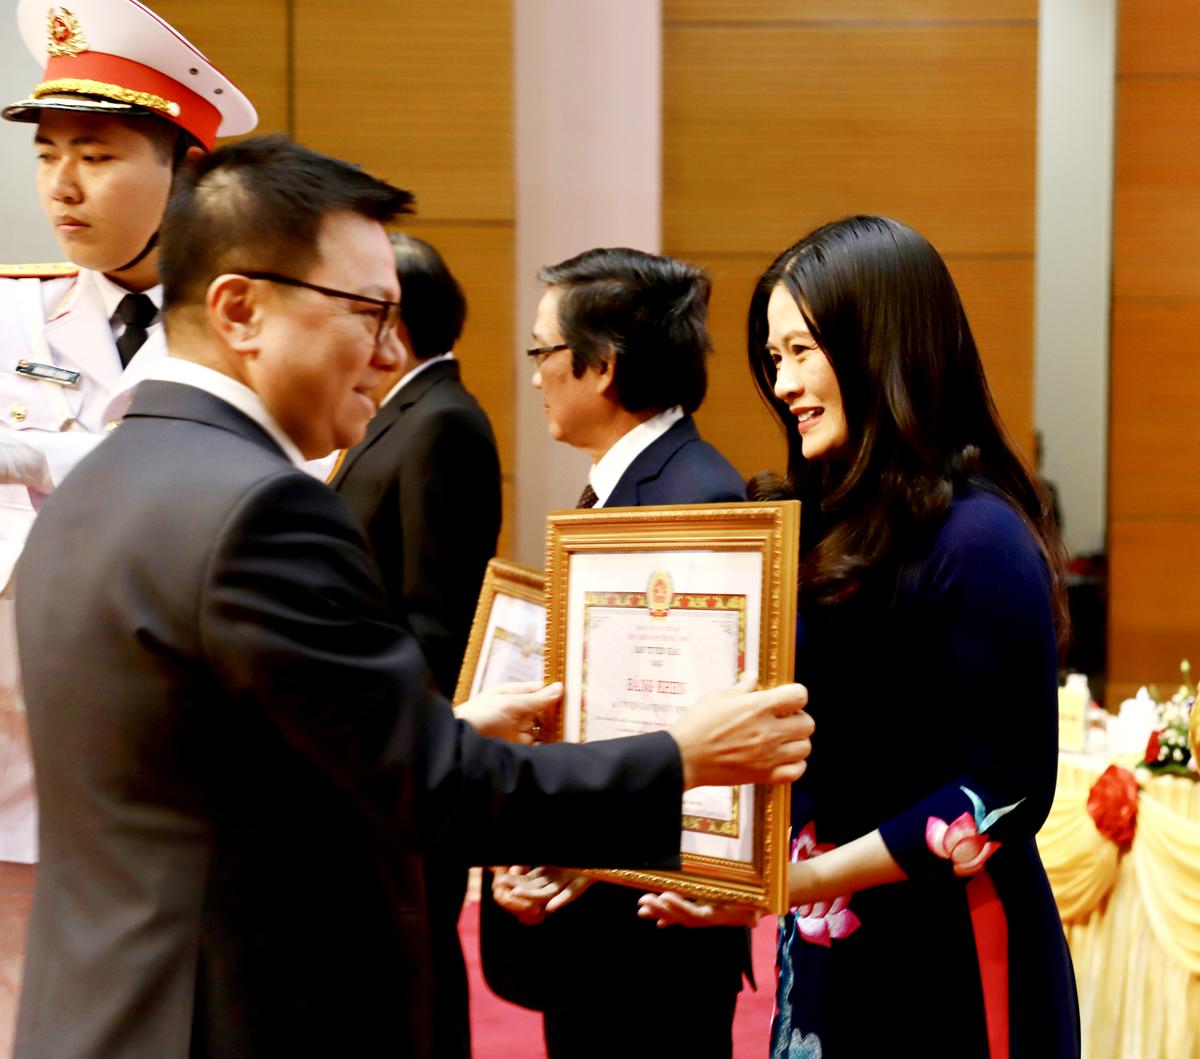 Đồng chí Vương Ngọc Hà, Trưởng Ban Tuyên giáo Tỉnh ủy nhận Bằng khen của Ban Tuyên giáo T.Ư dành cho tập thể Ban Tuyên giáo Tỉnh ủy Hà Giang